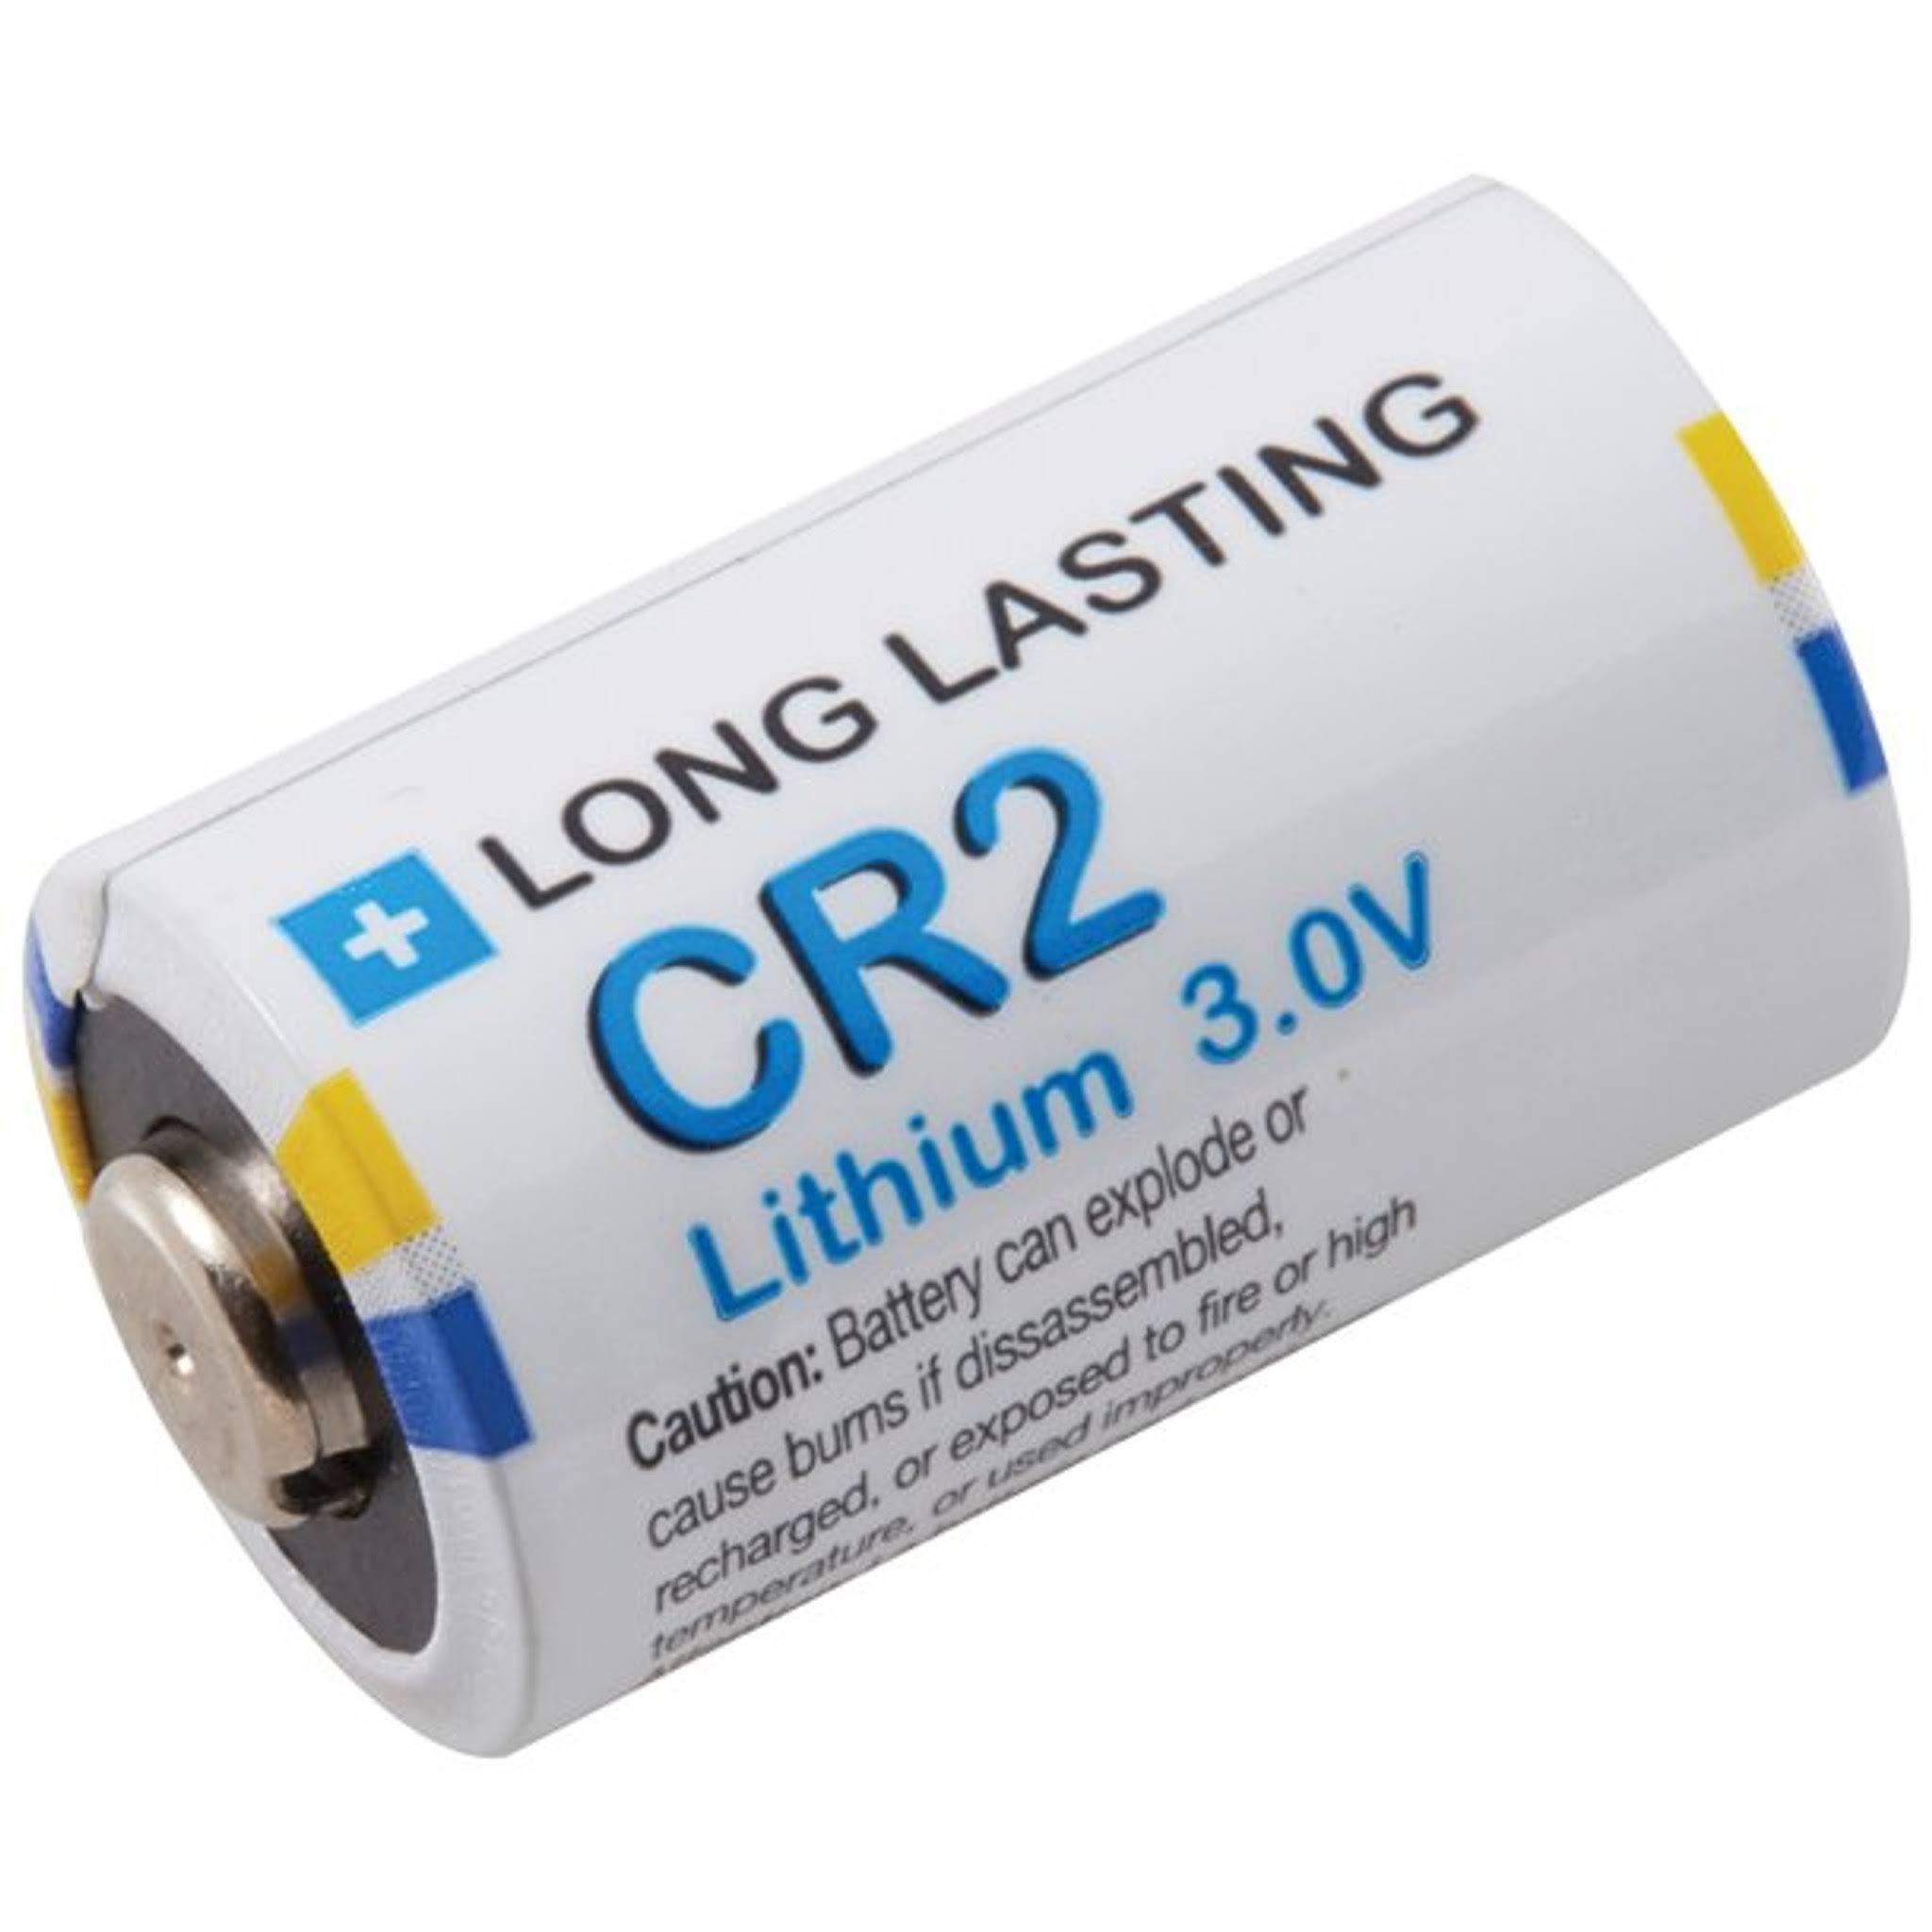 Ultralast UL Cr2-2 Lithium Photo Batteries - 3V